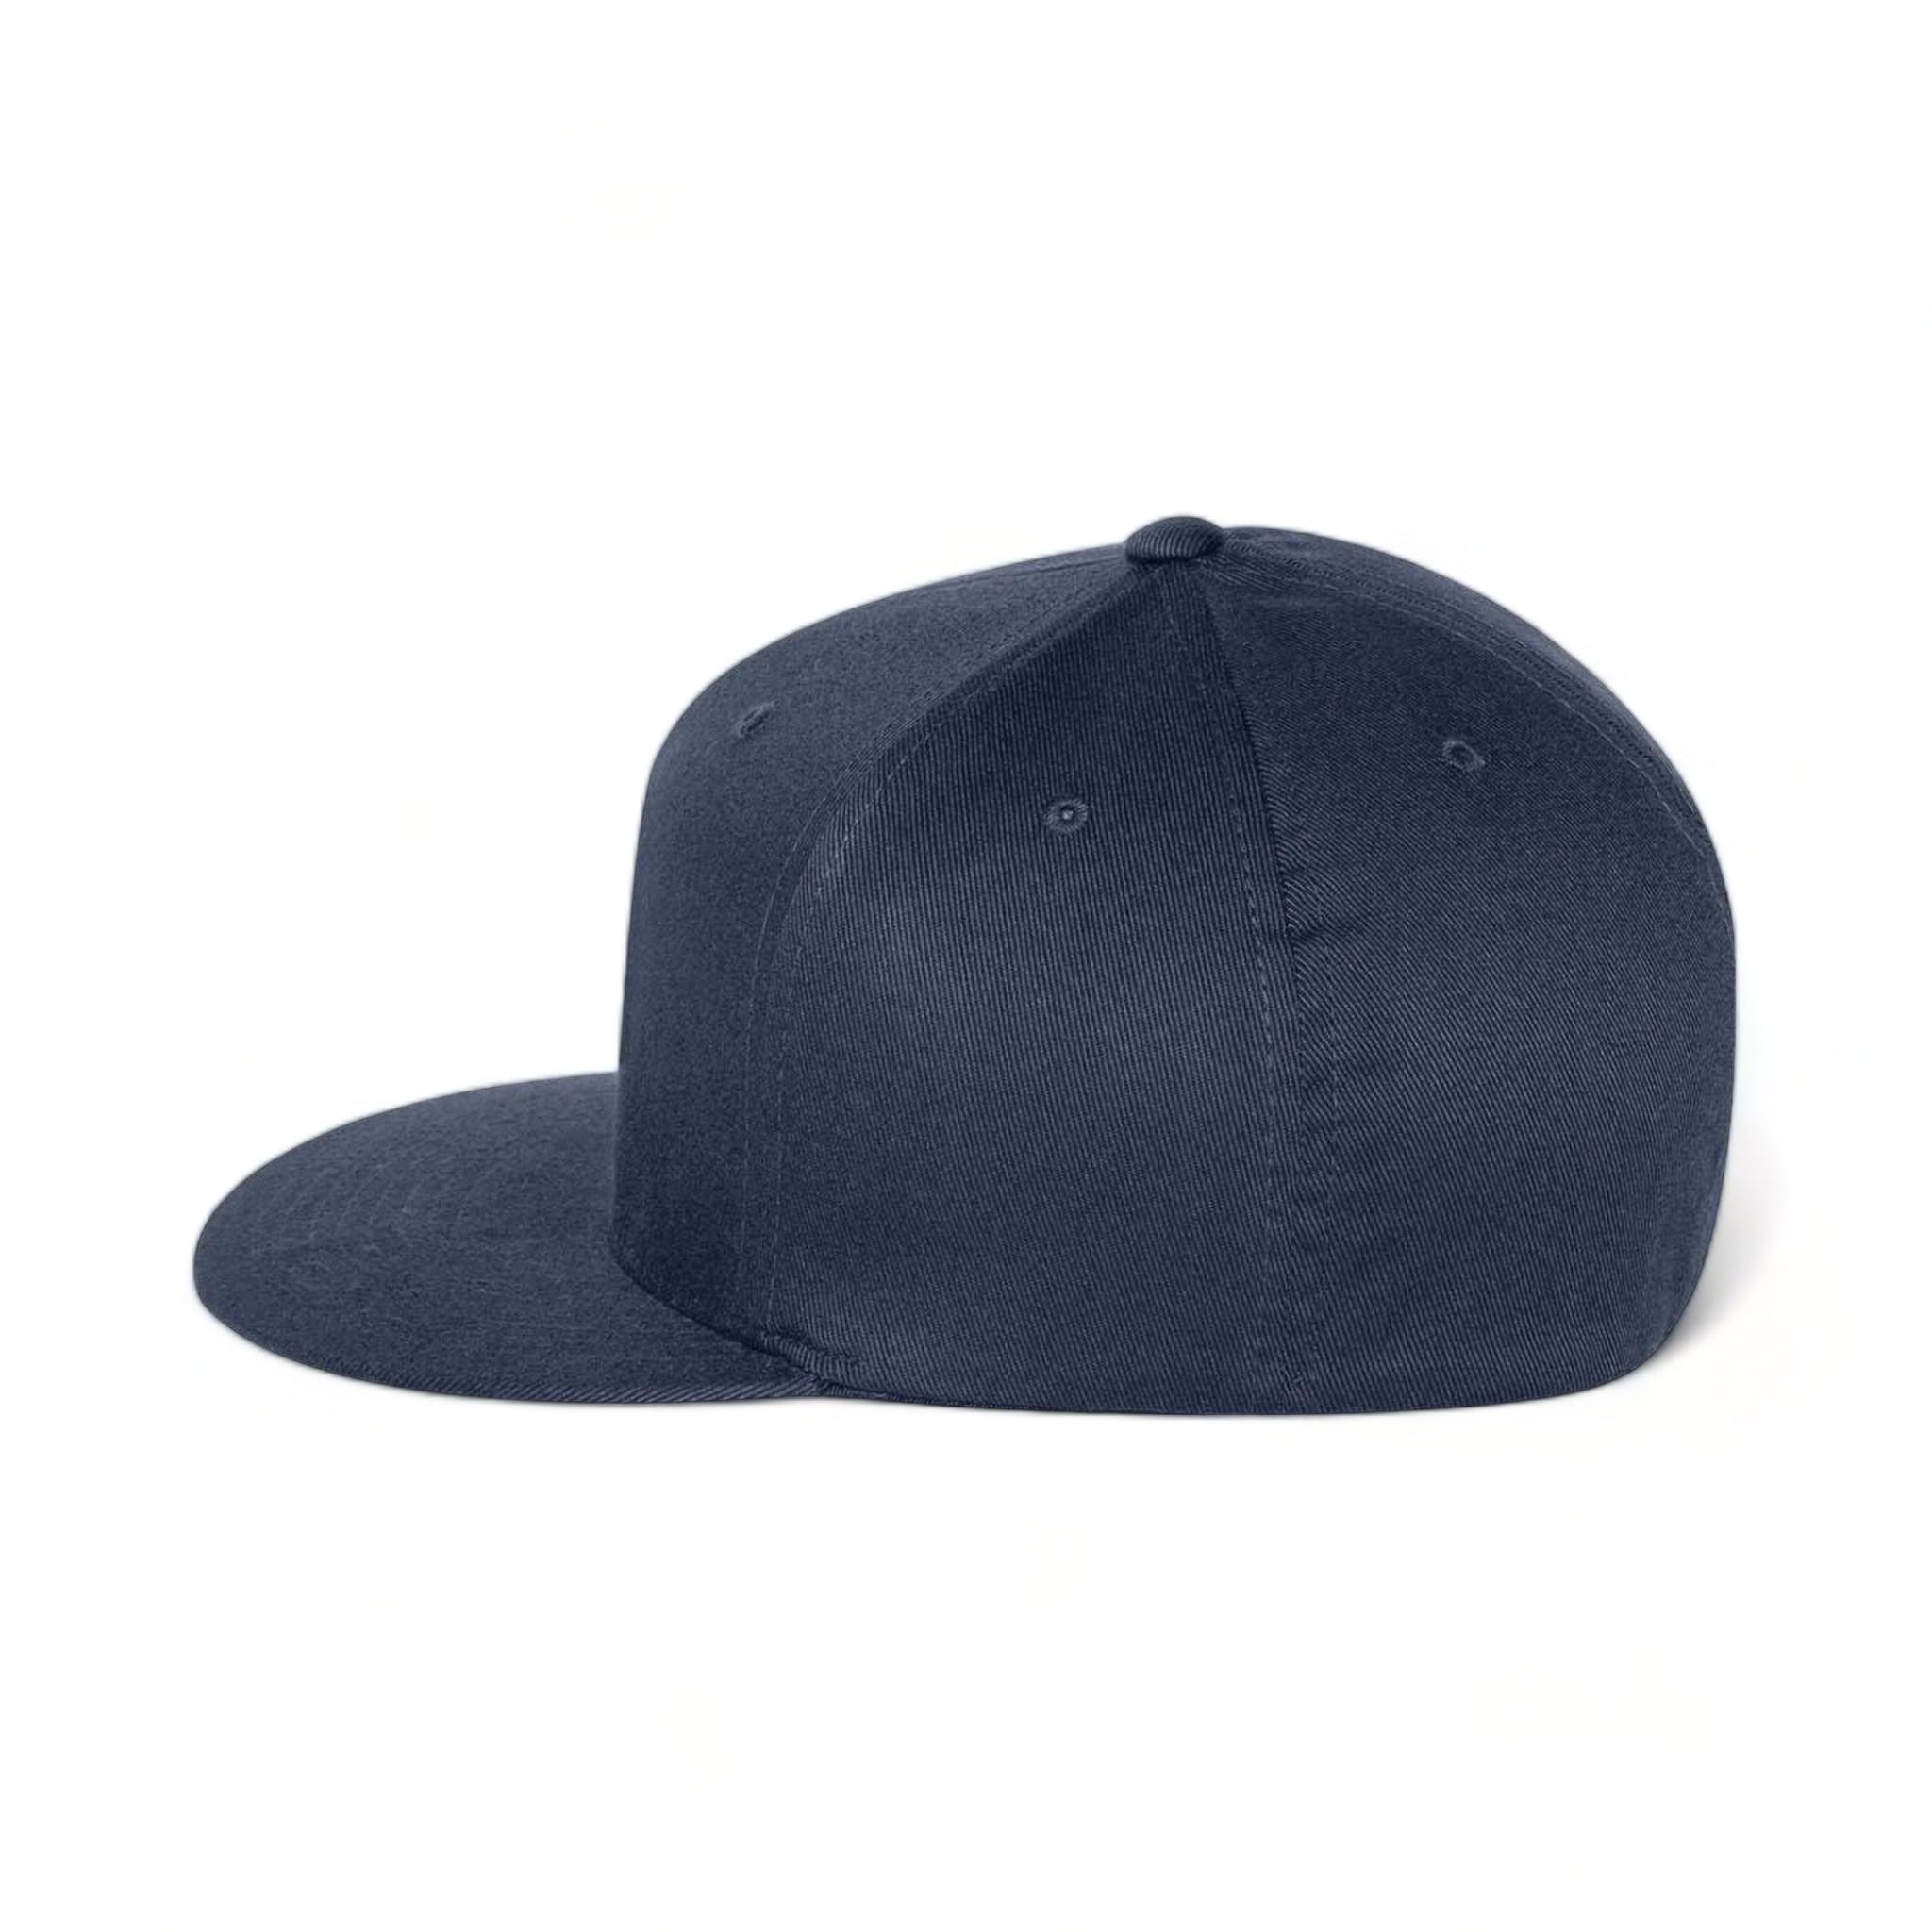 Side view of Flexfit 6297f custom hat in navy